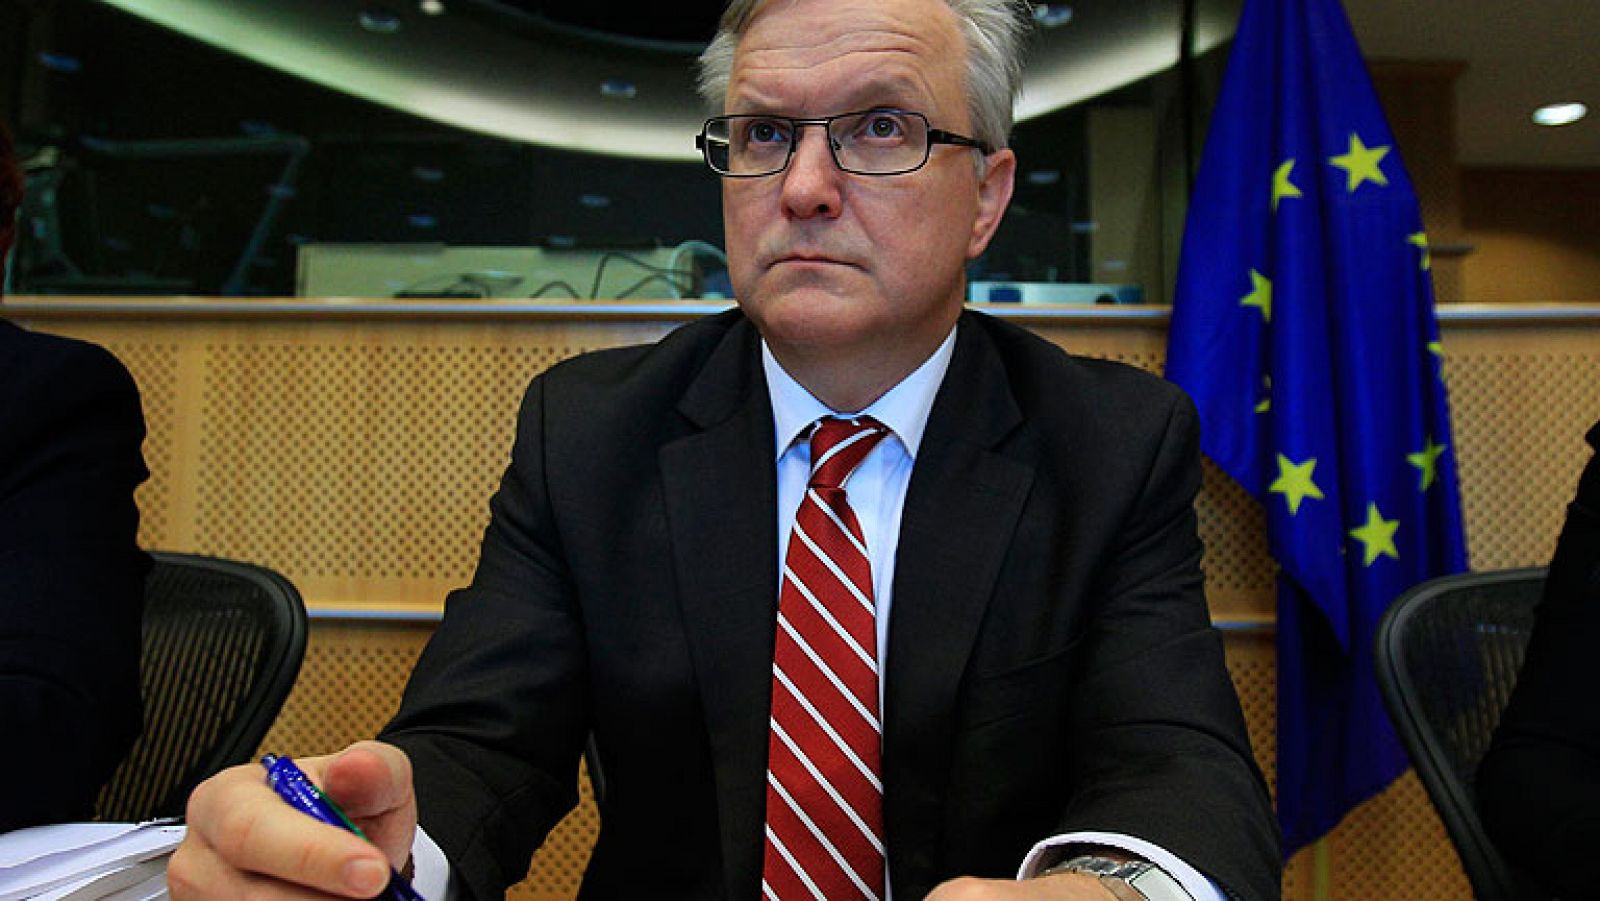  Rehn espera de España medidas y reformas "amplias y concretas" para frenar el paro